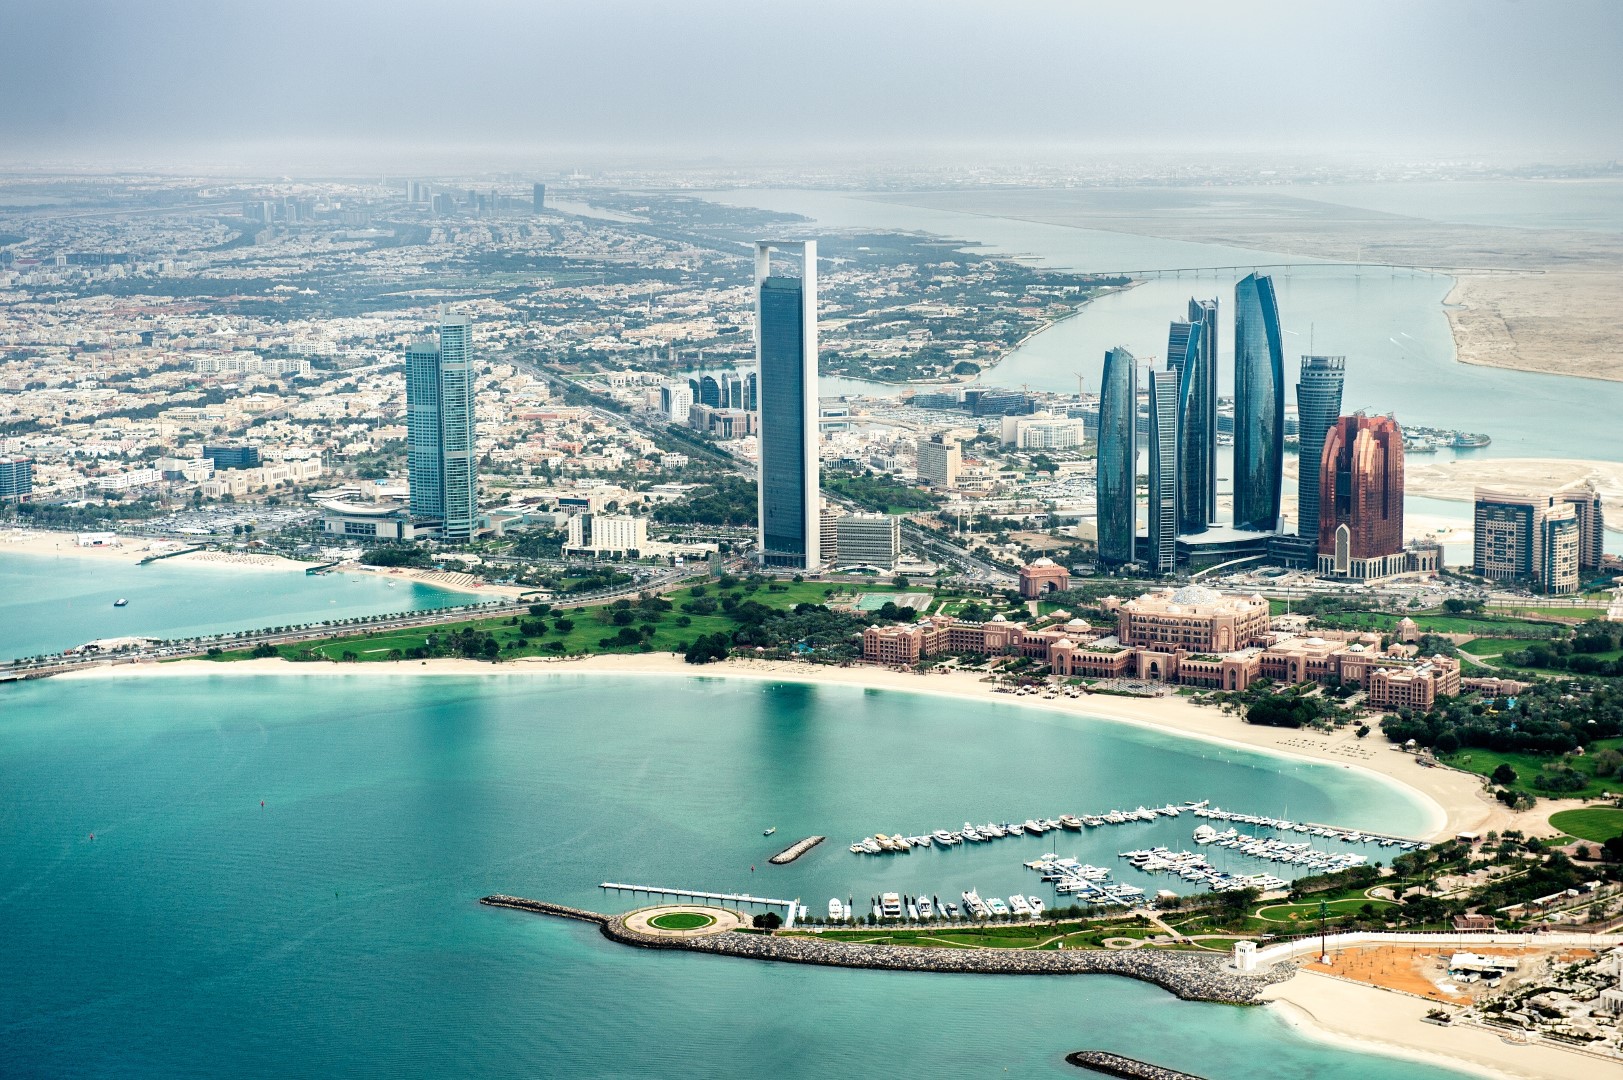 أبوظبي تكشف عن حملتها الصيفية وشراكاتها العالمية الجديدة خلال "سوق السفر العربي 2022"